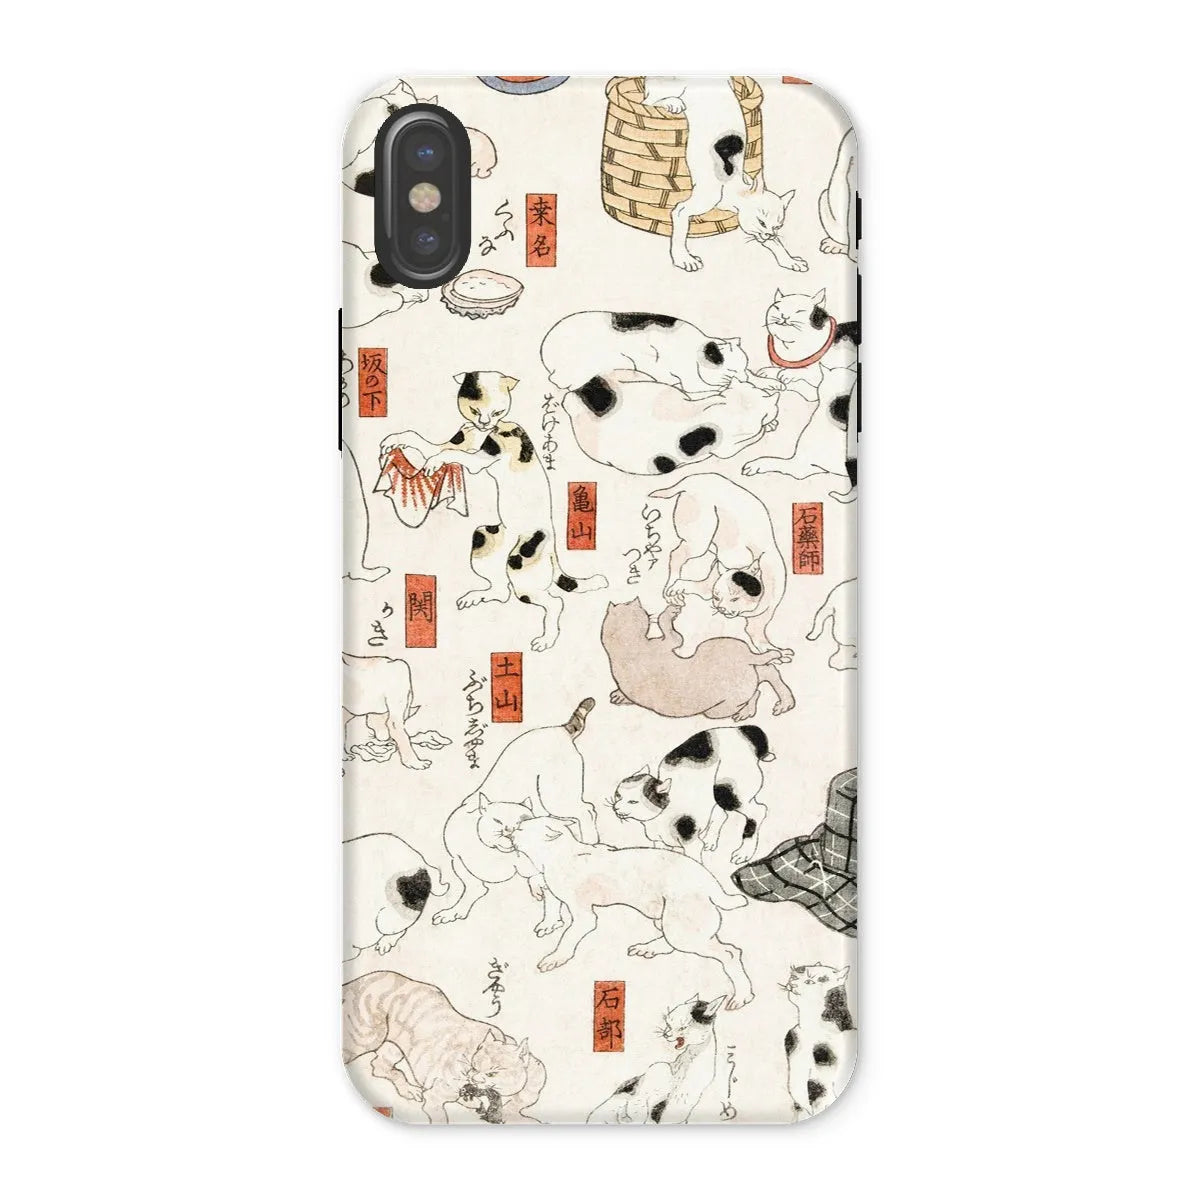 Japanese Cat Aesthetic Art Phone Case - Utagawa Kuniyoshi - Iphone x / Matte - Mobile Phone Cases - Aesthetic Art